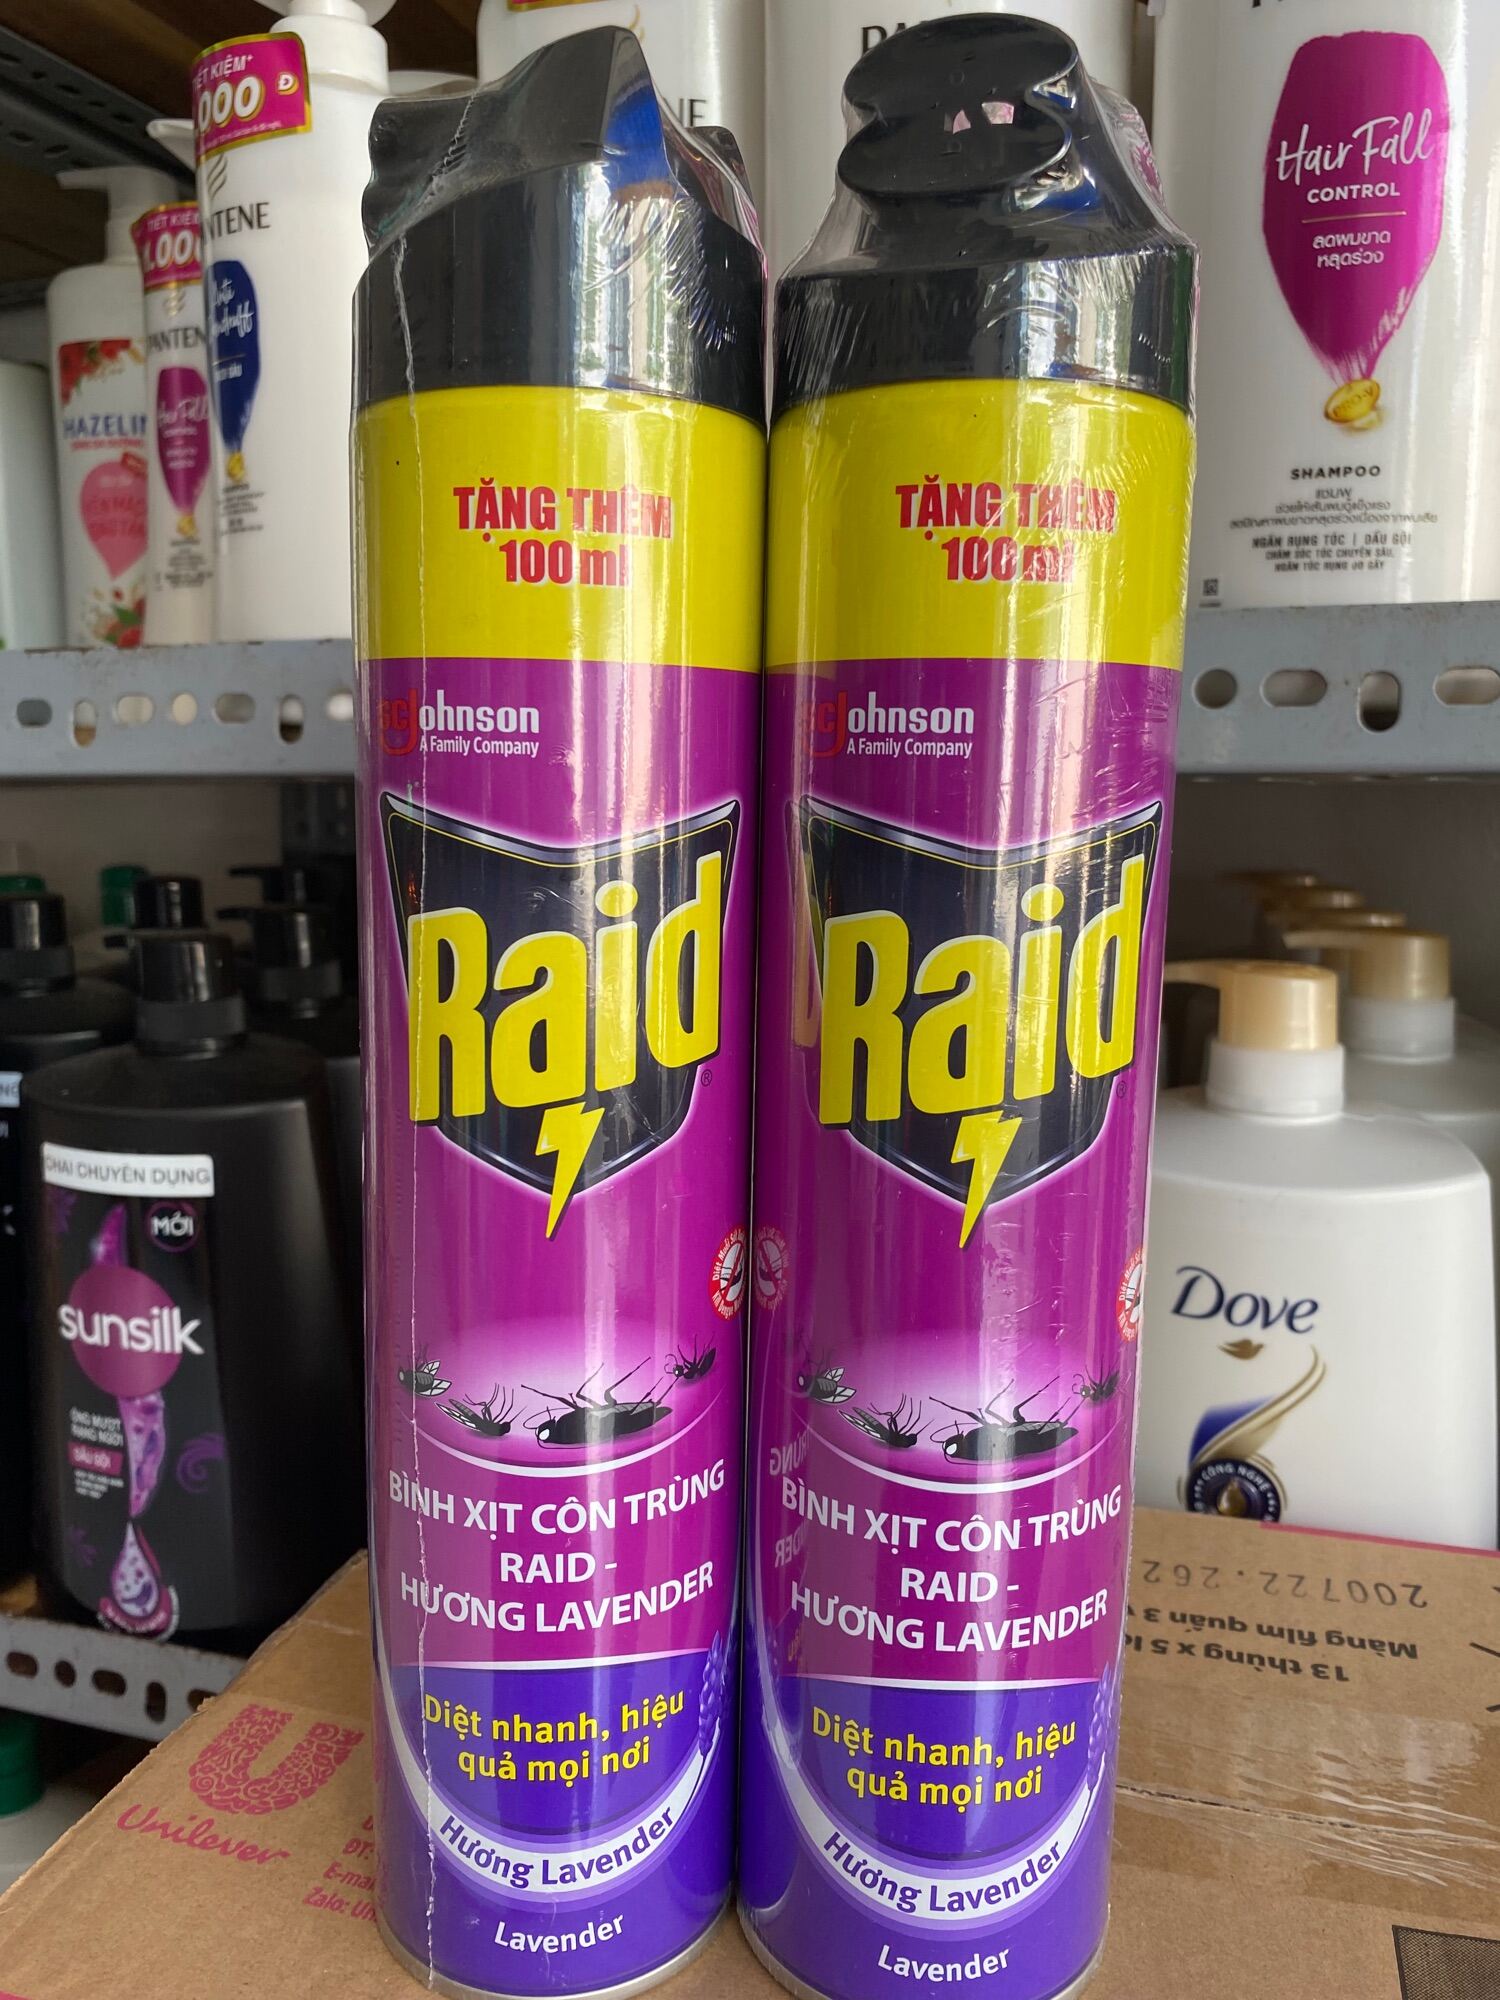 Bình xịt côn trùng RAID- hương lavender 600ml tặng thêm 100ml thumbnail